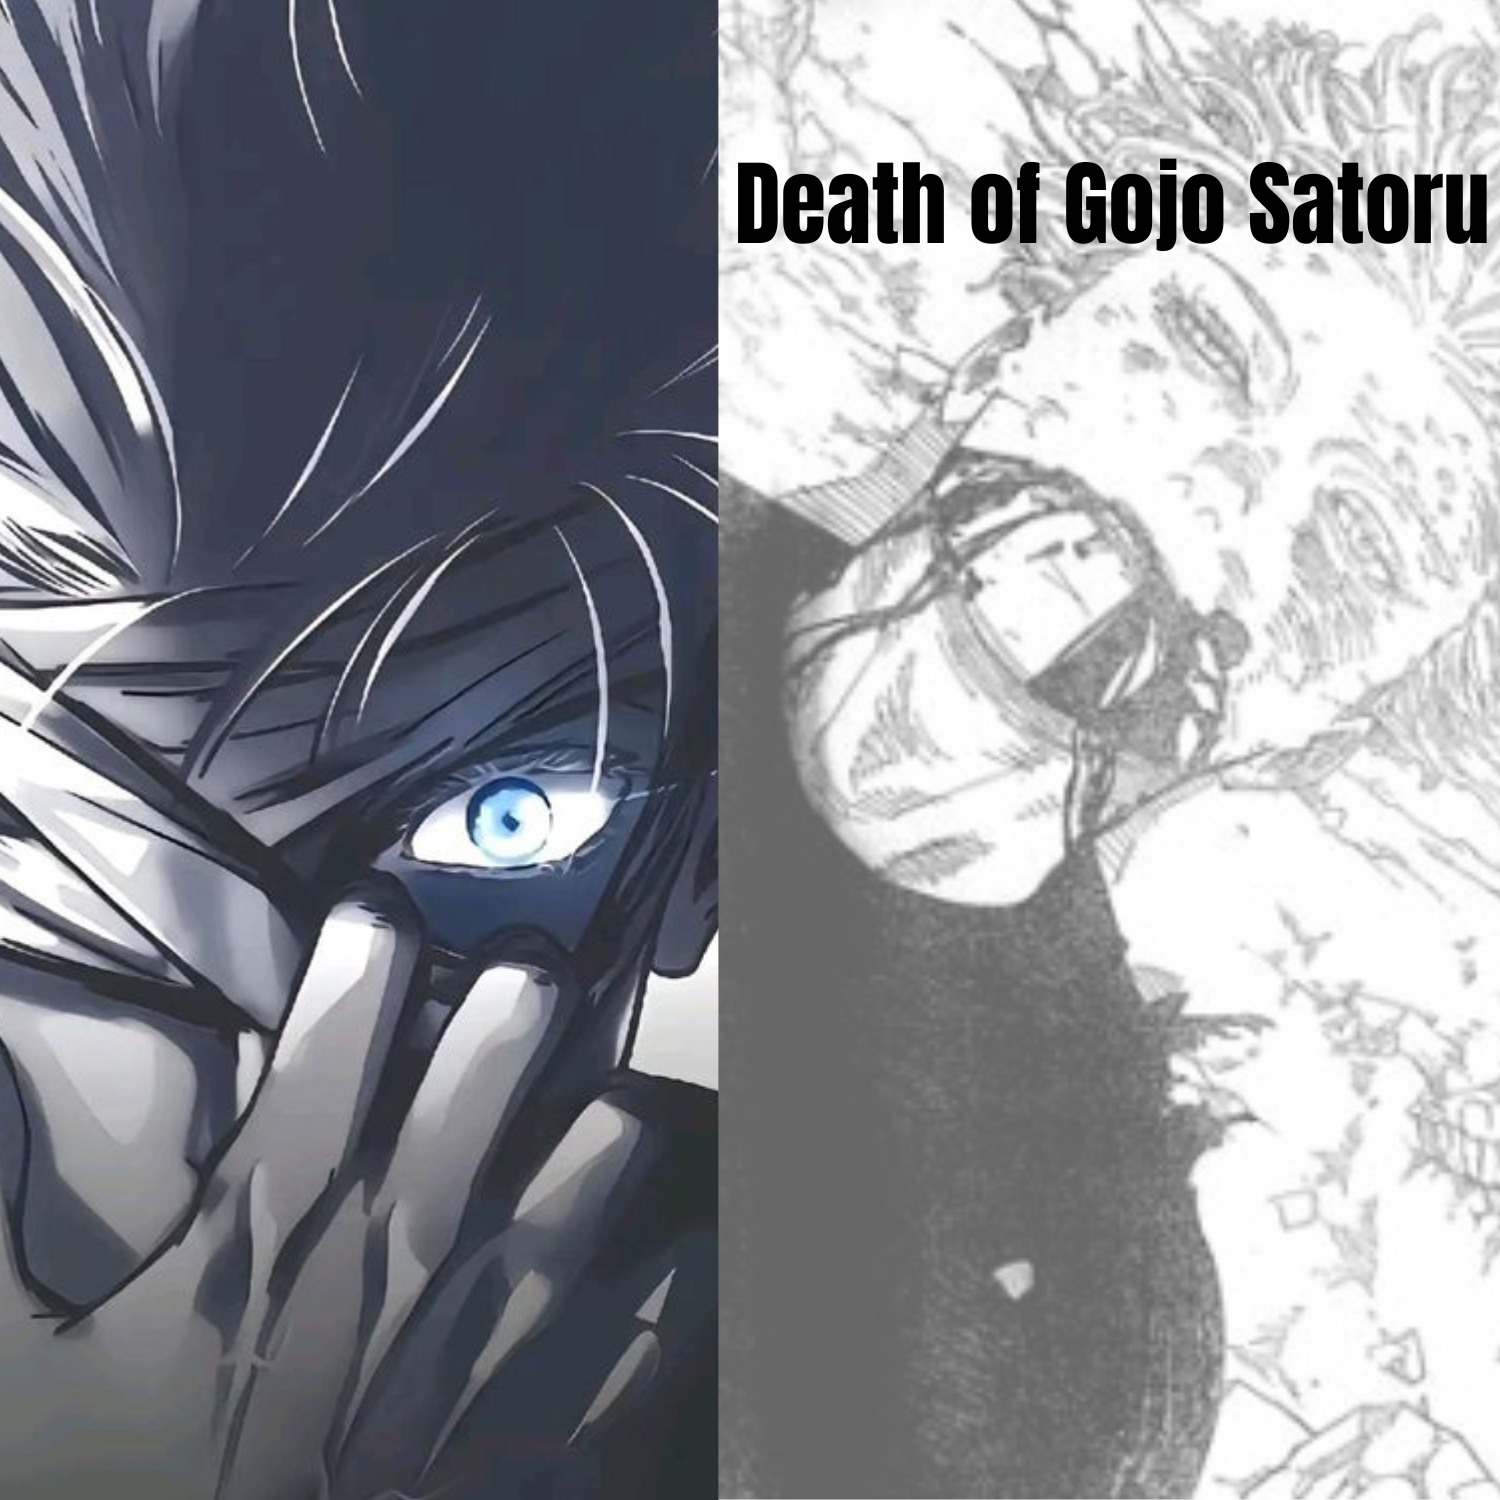 Gojo Satoru's death